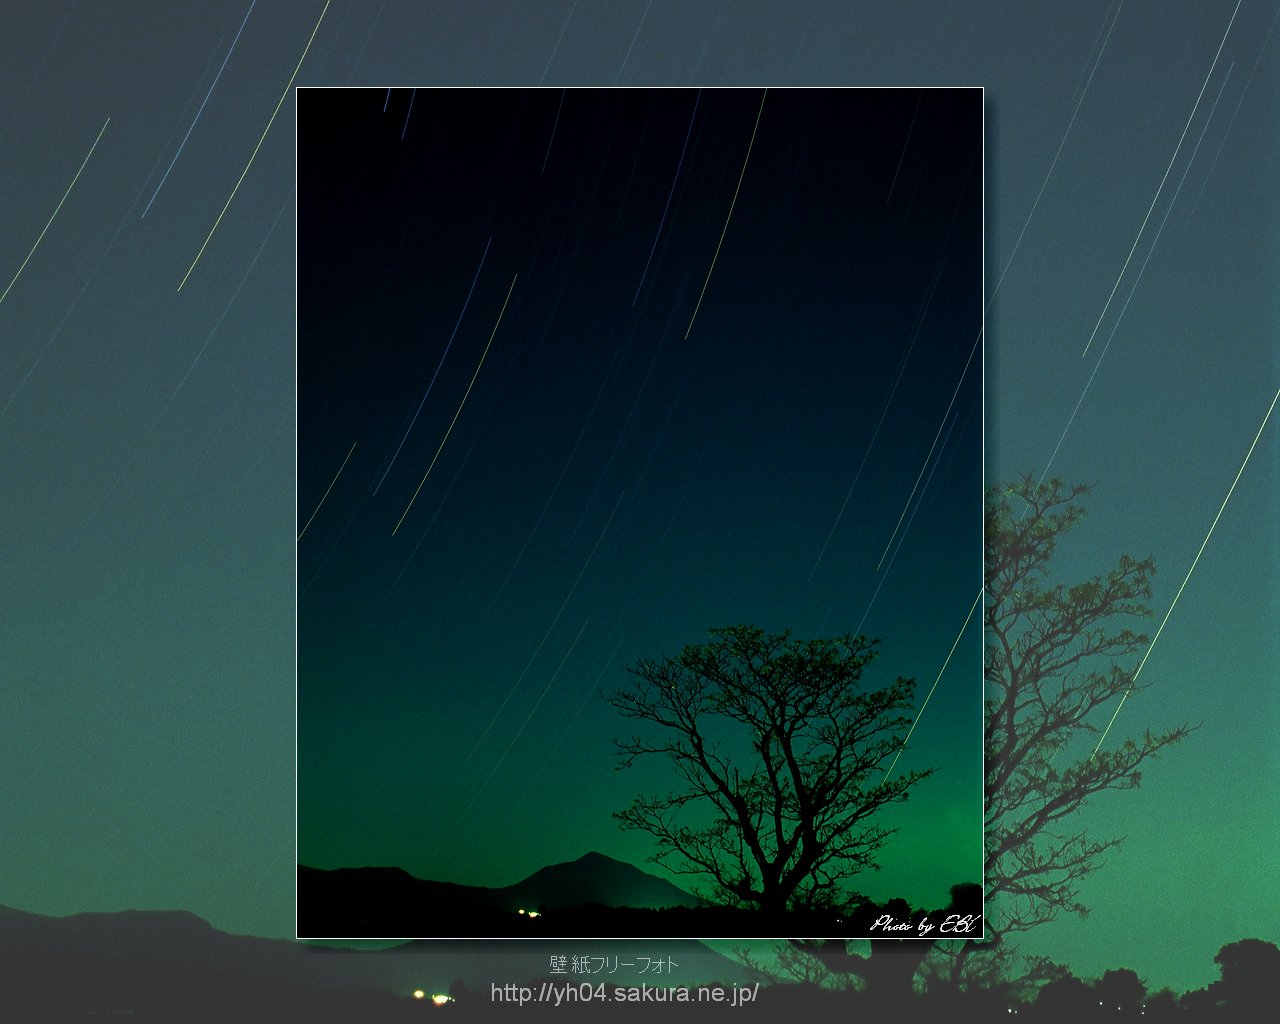 一本の樹と高千穂の峰,そして星の光跡をリバーサルフィルムで撮影した画像をモチーフしました 「高画質＋高解像度(1280×1024)」デスクトップ無料壁紙」